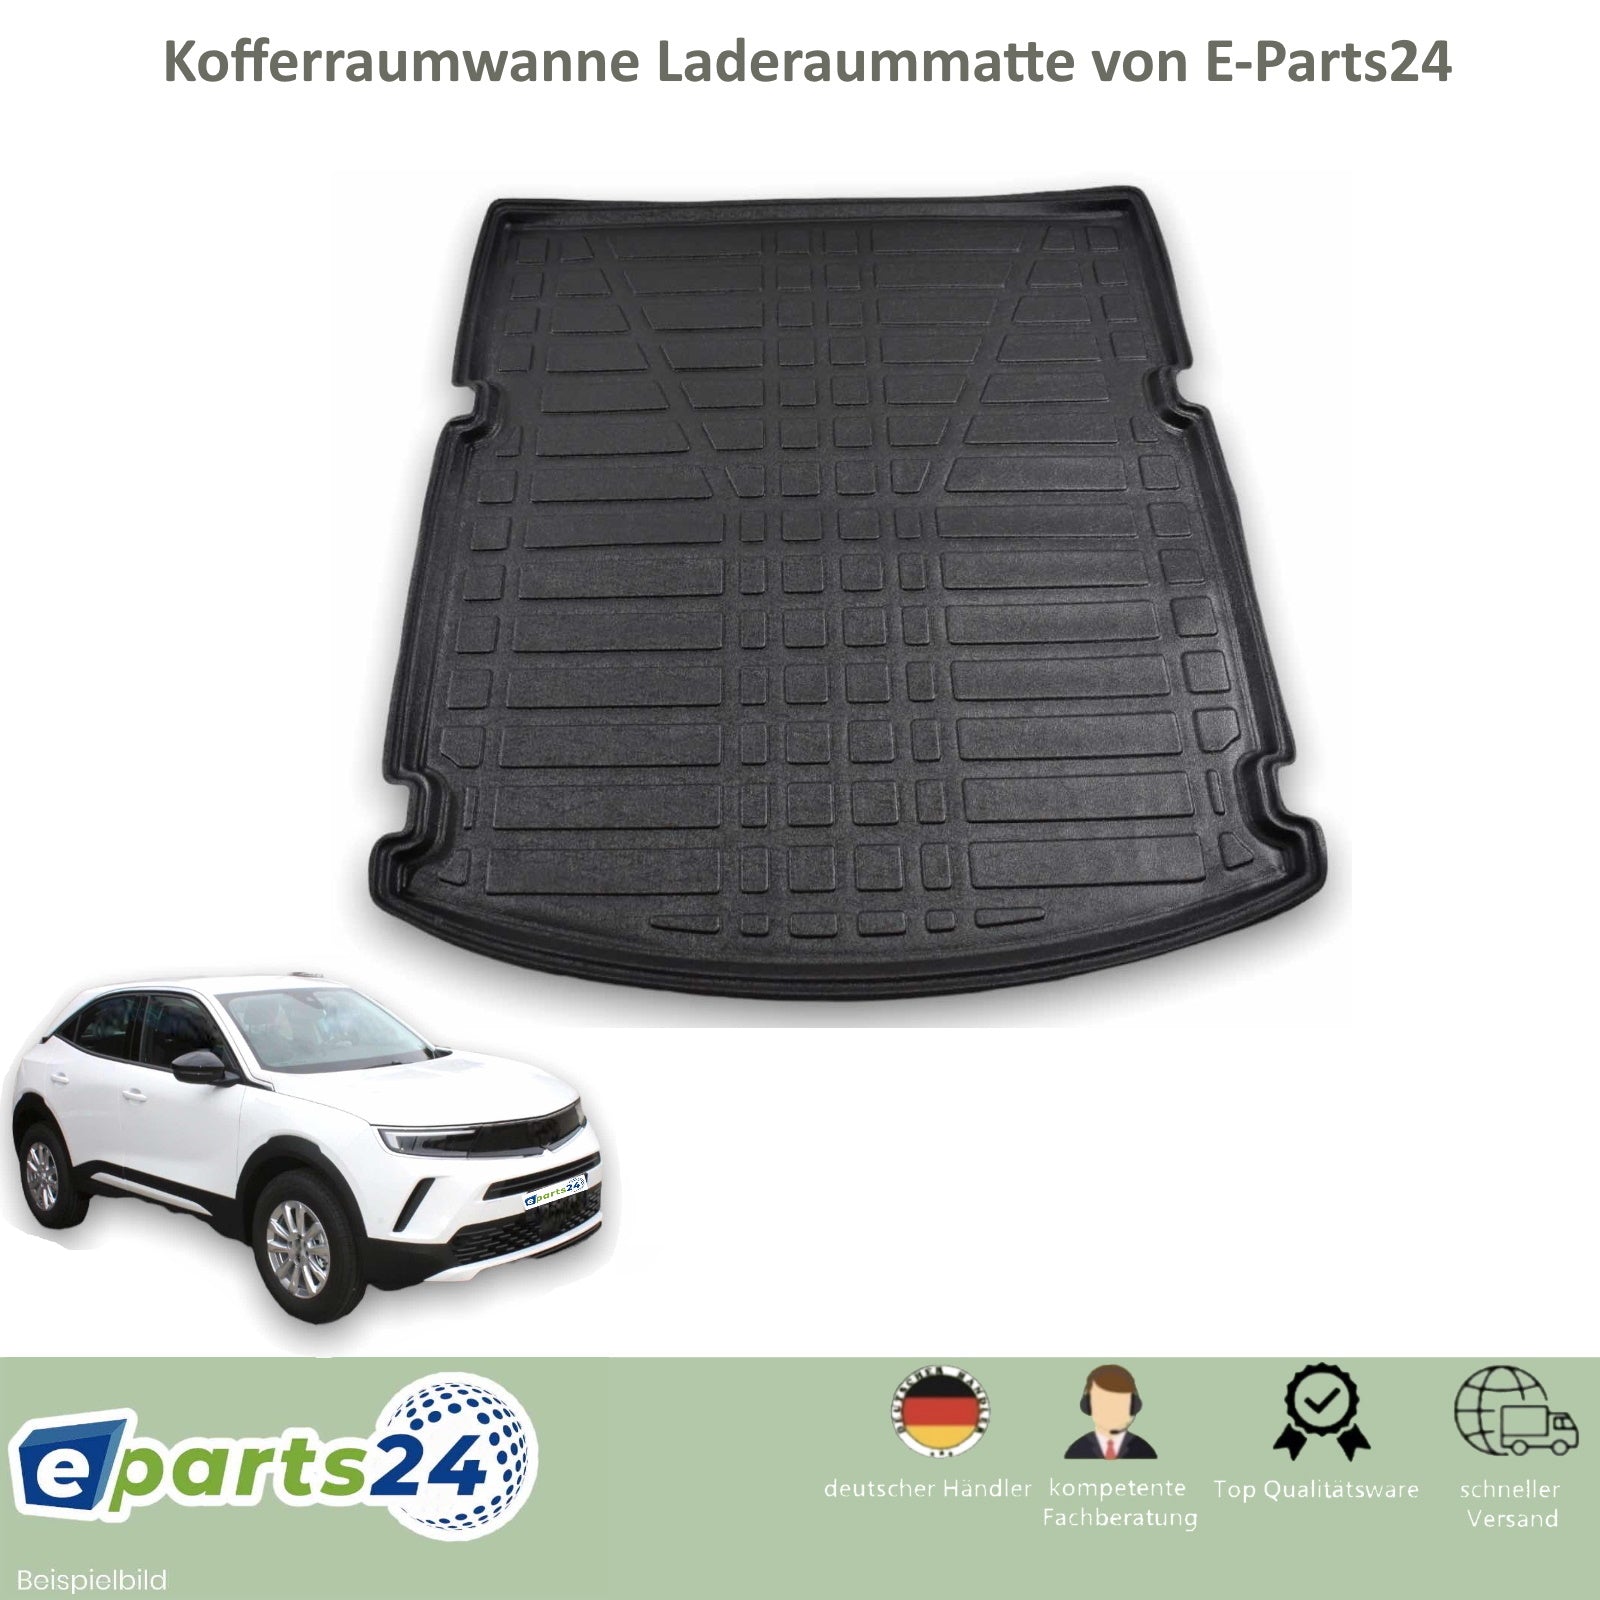 Kofferraumwanne Kofferraummatte Laderaumwanne für Opel E-Parts24 – B Mokka untere